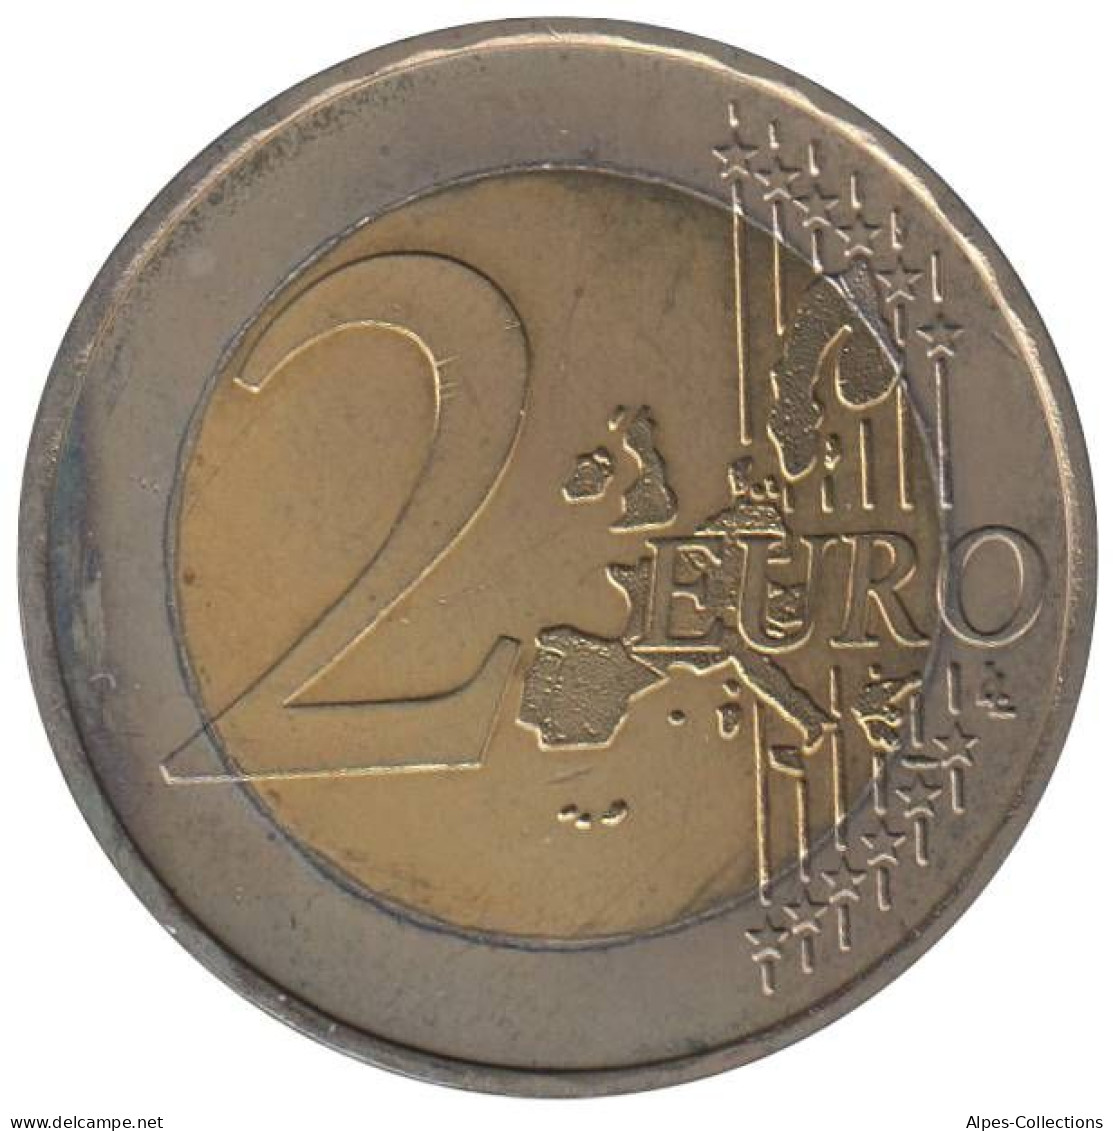 AL20002.1F - ALLEMAGNE - 2 Euros - 2002 F - Germany